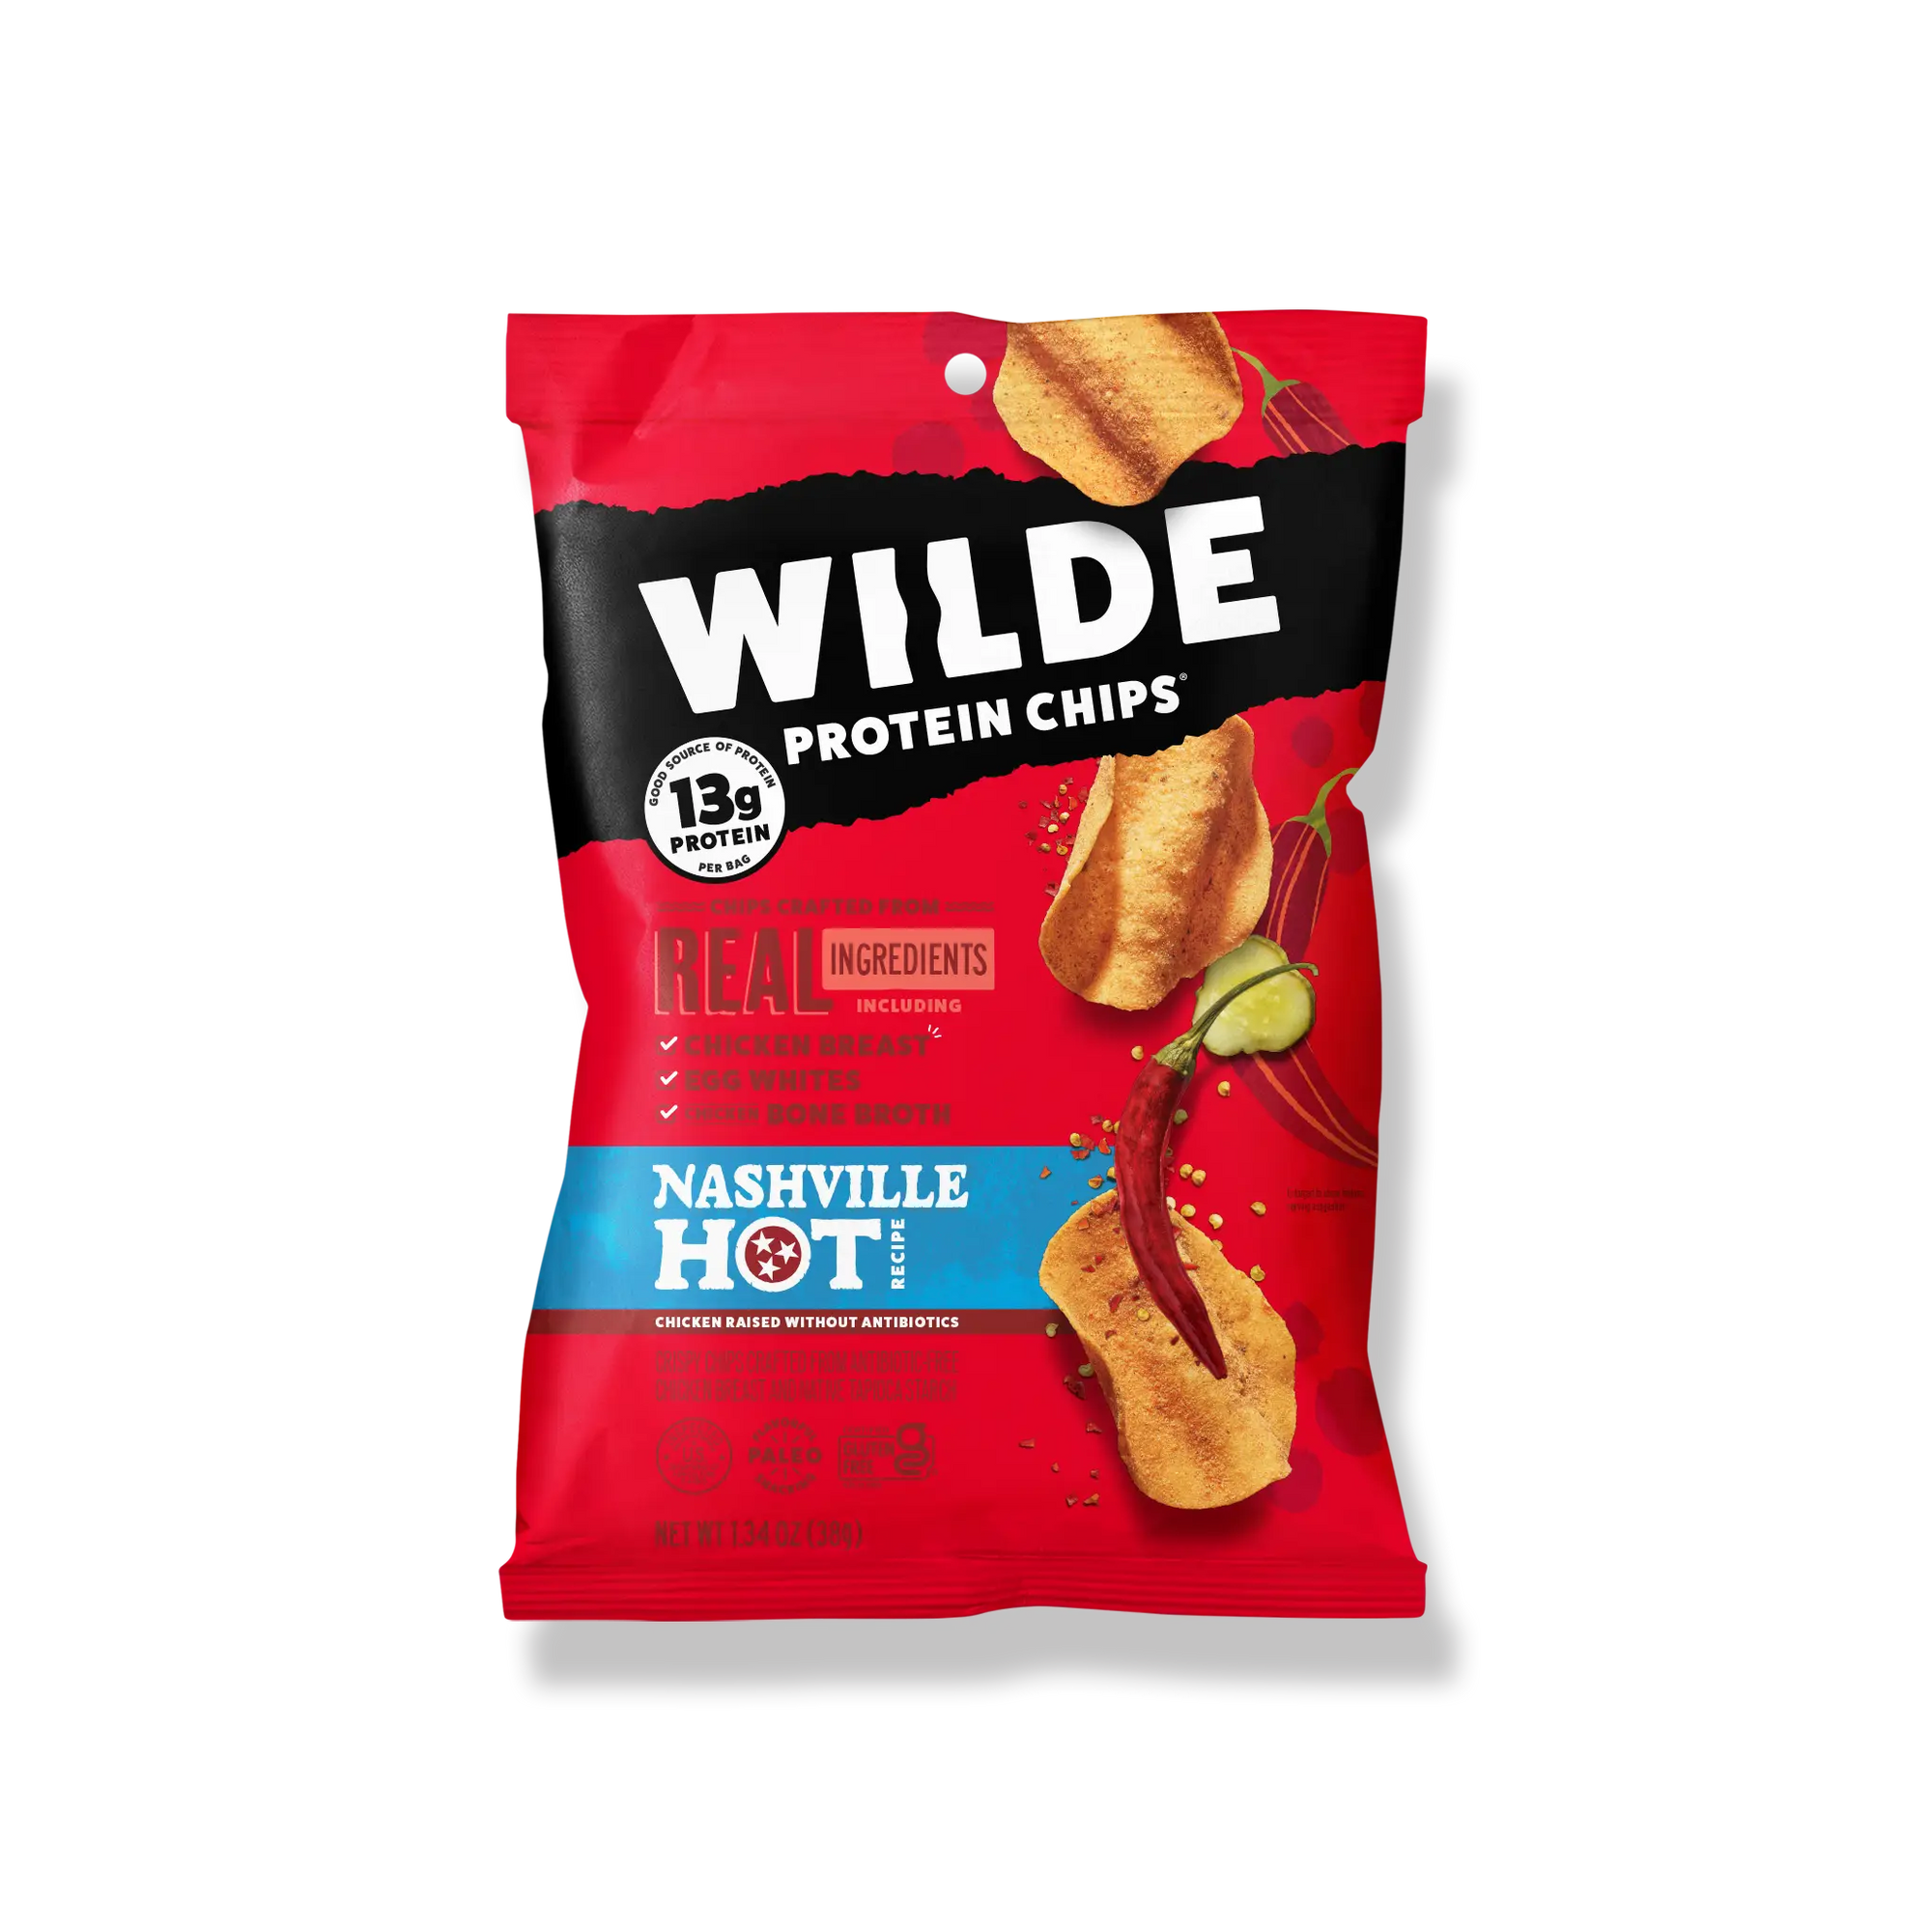 Wilde Protein Chips - Bemoxie Supplements